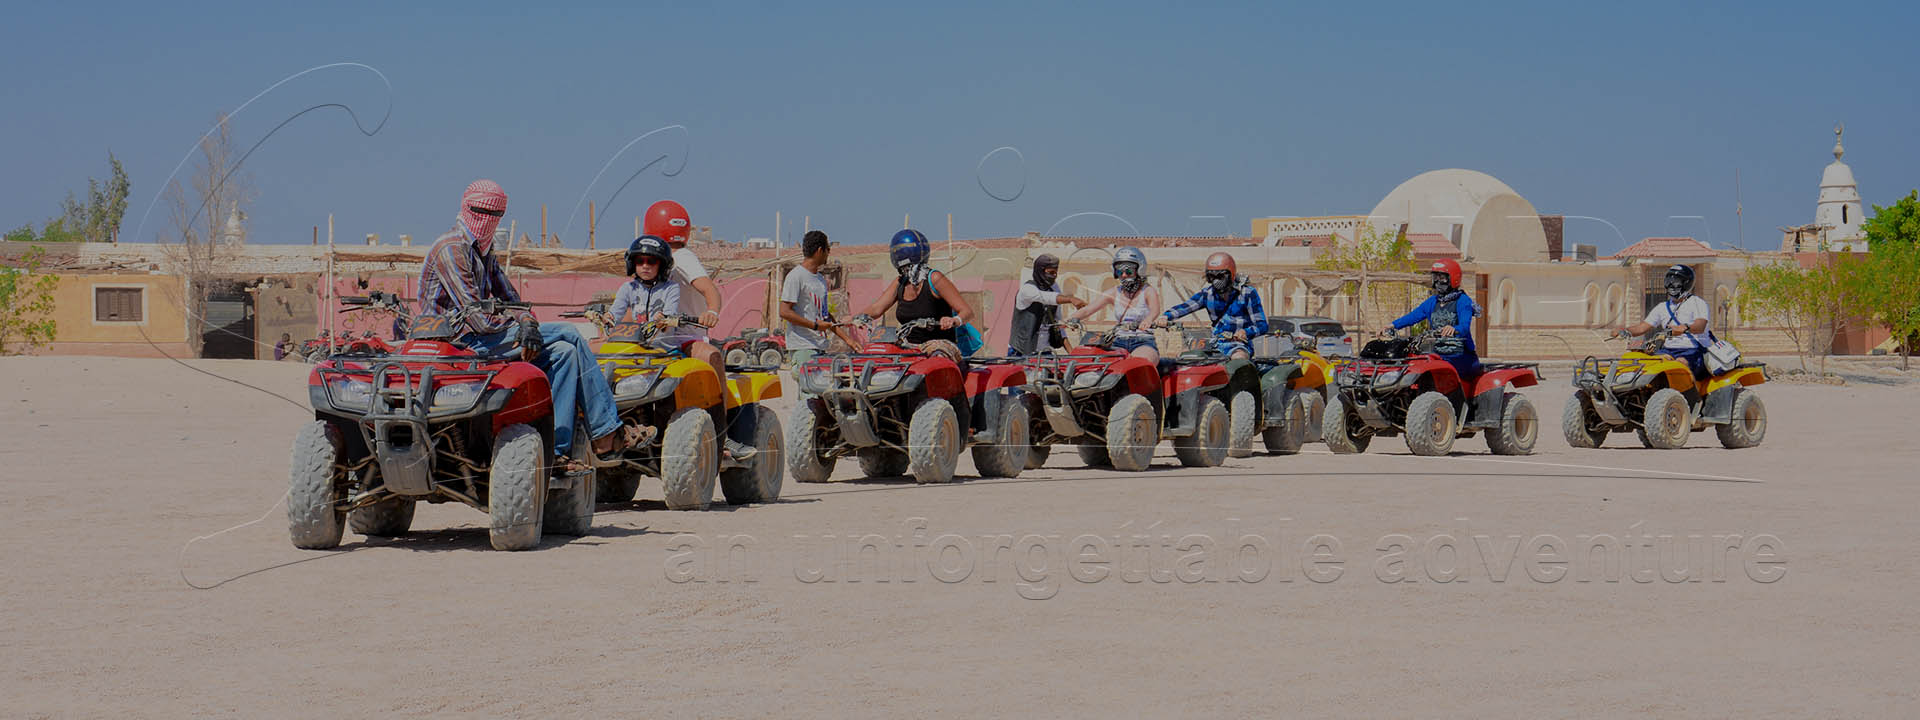 Recorrido en quad por Hurghada con telescopio de observación de estrellas